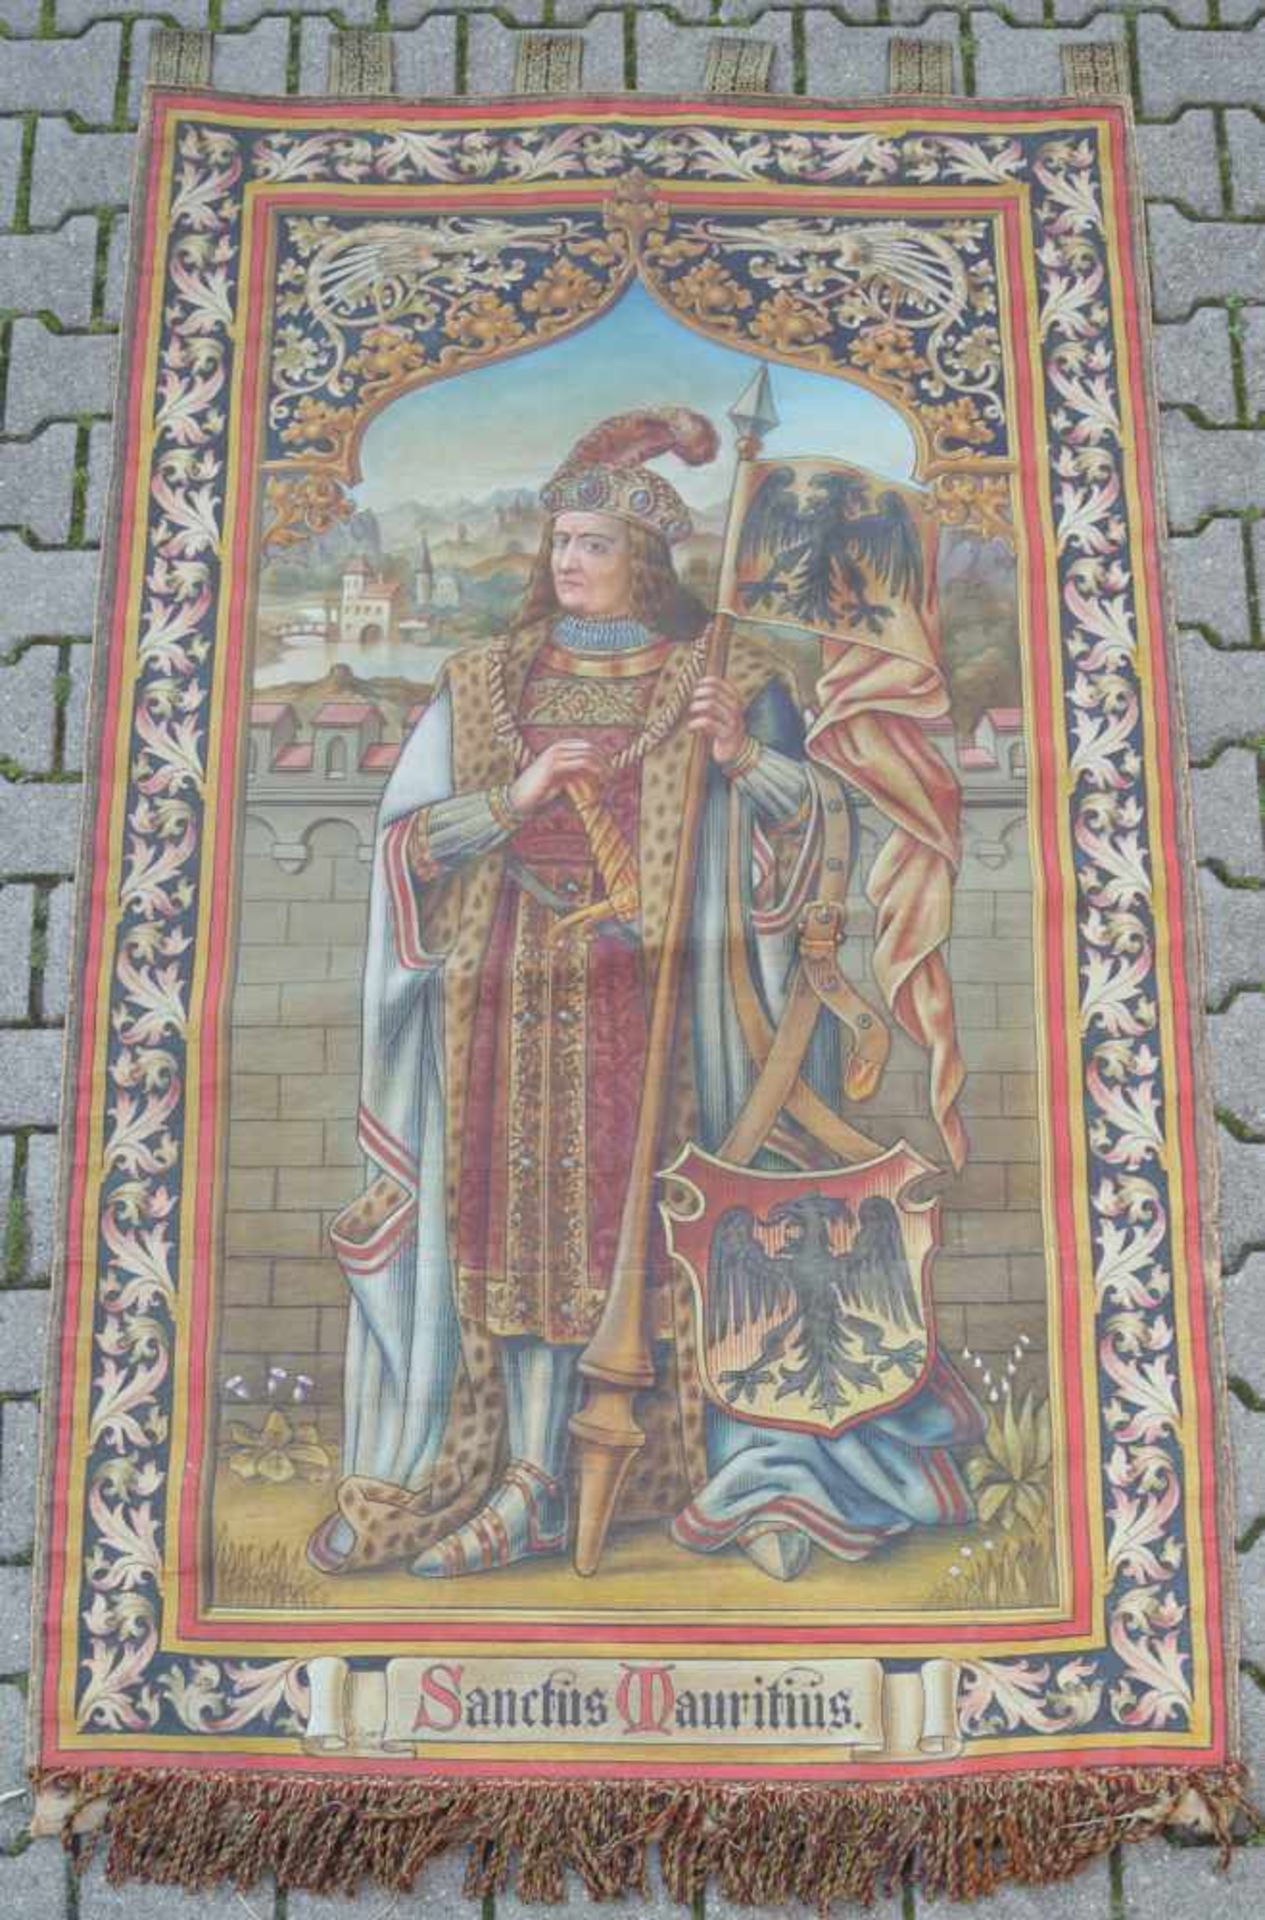 Wandteppich mit der Darstellung des Heiligen Maritius, 19. Jhd.Stoff, handbemalt, unten bez. "